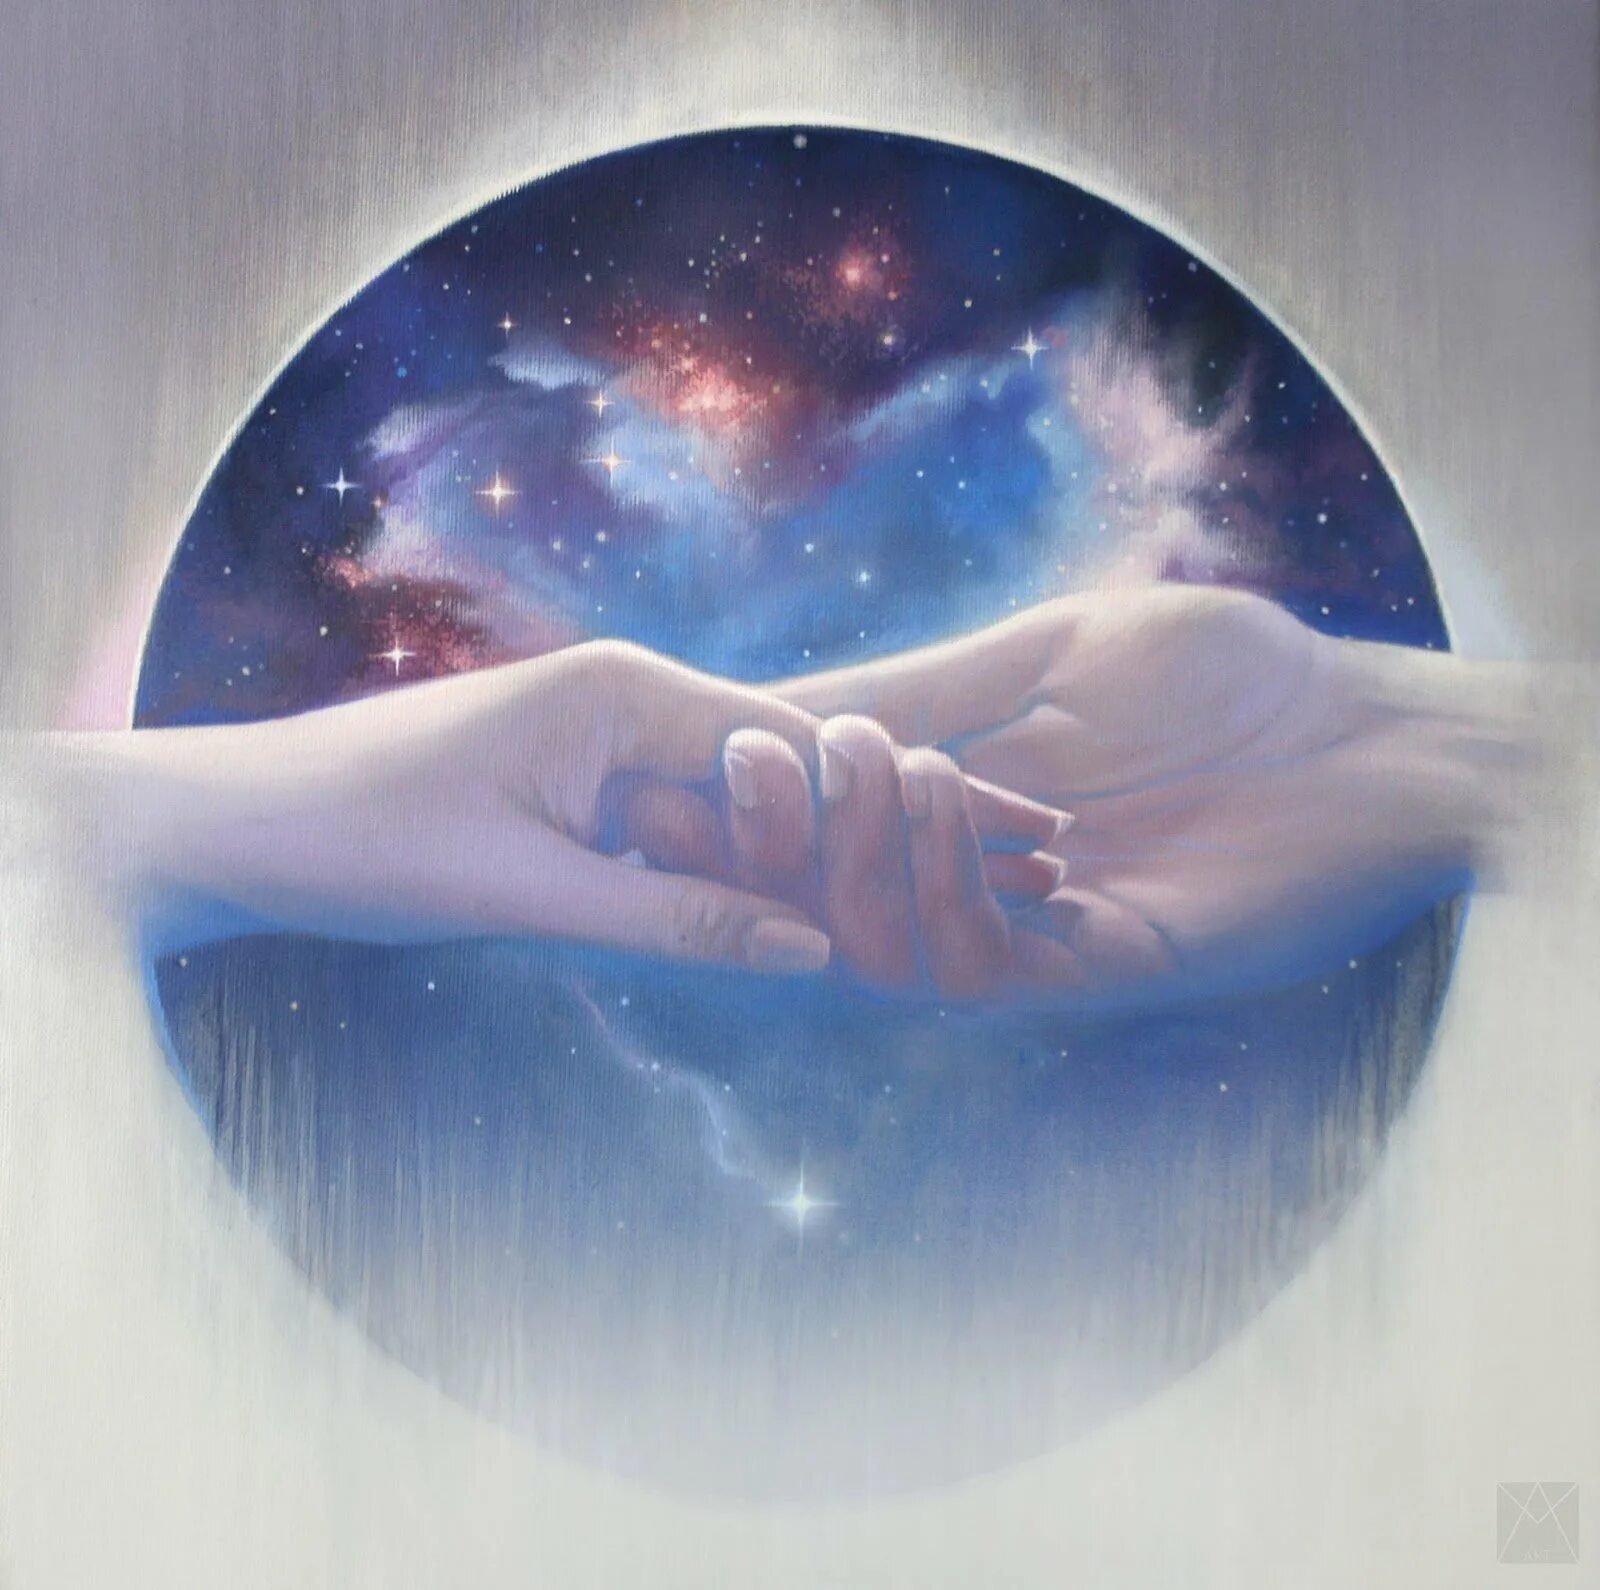 Вселенная в руках. Вселенная в руках человека. Вселенная и любовь. Космос в руках. Символ человеческой души